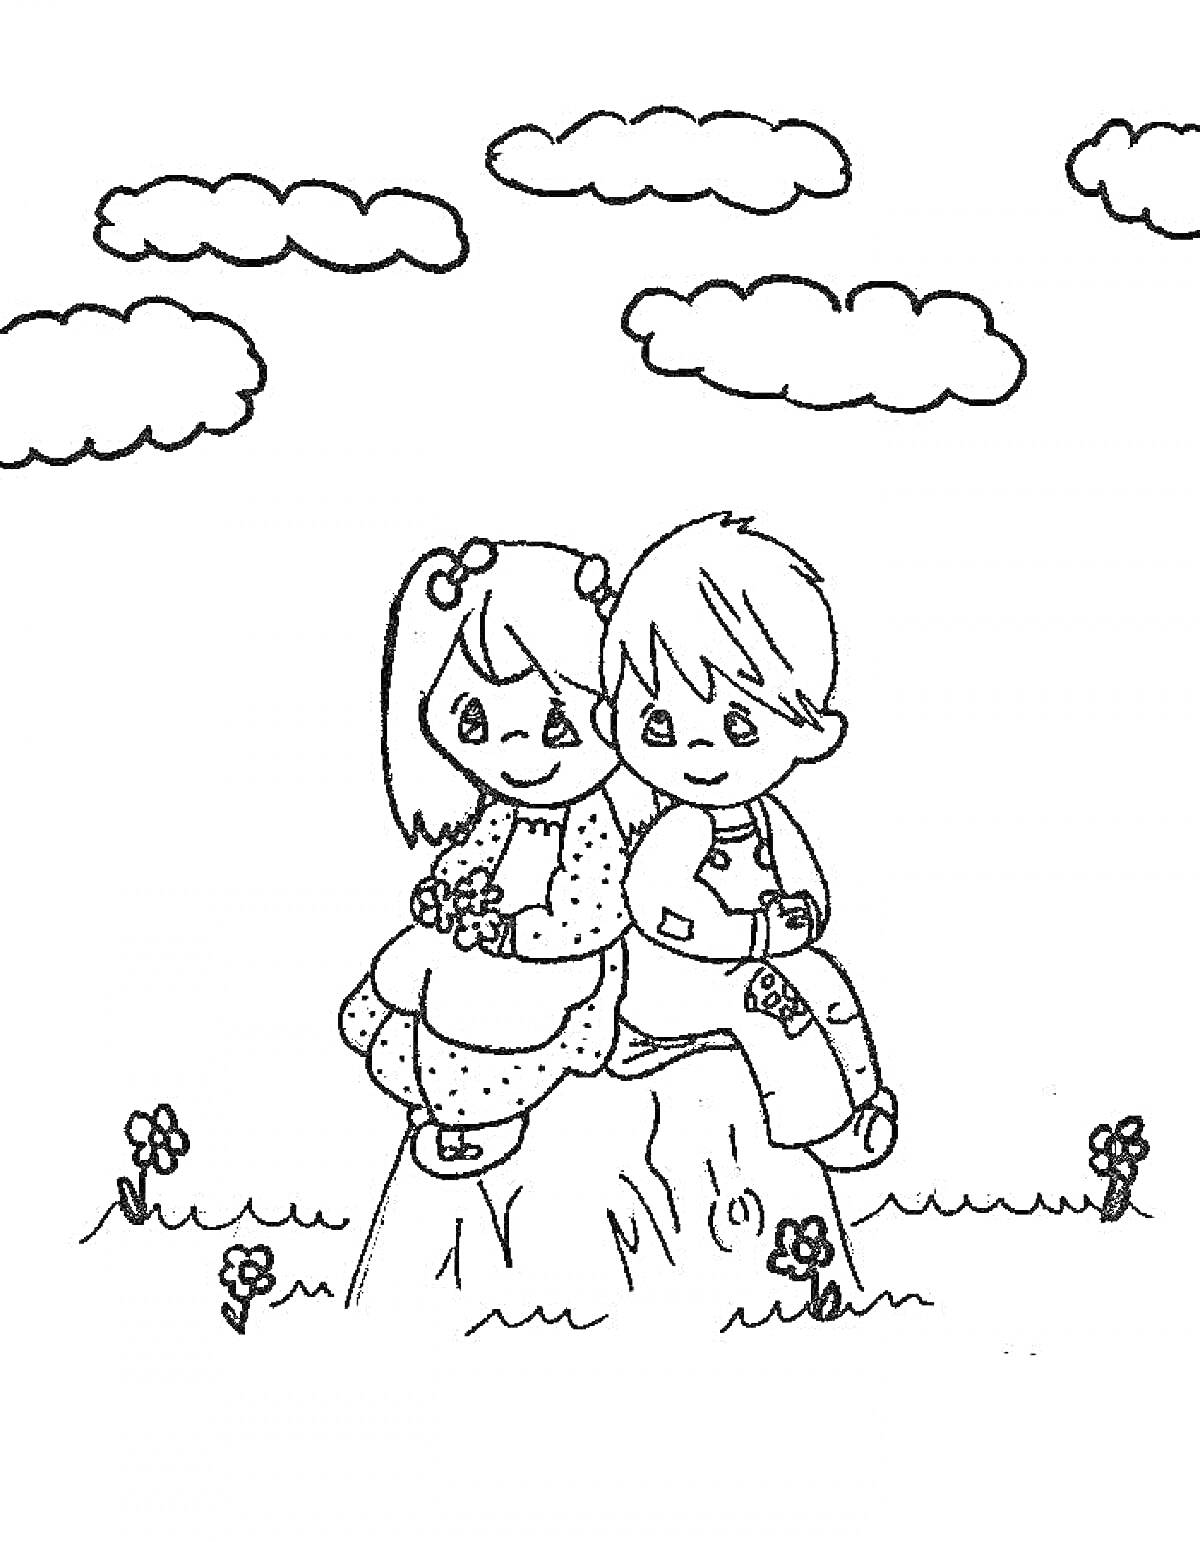 Раскраска Девочка и мальчик сидят на пеньке под облаками, вокруг цветы